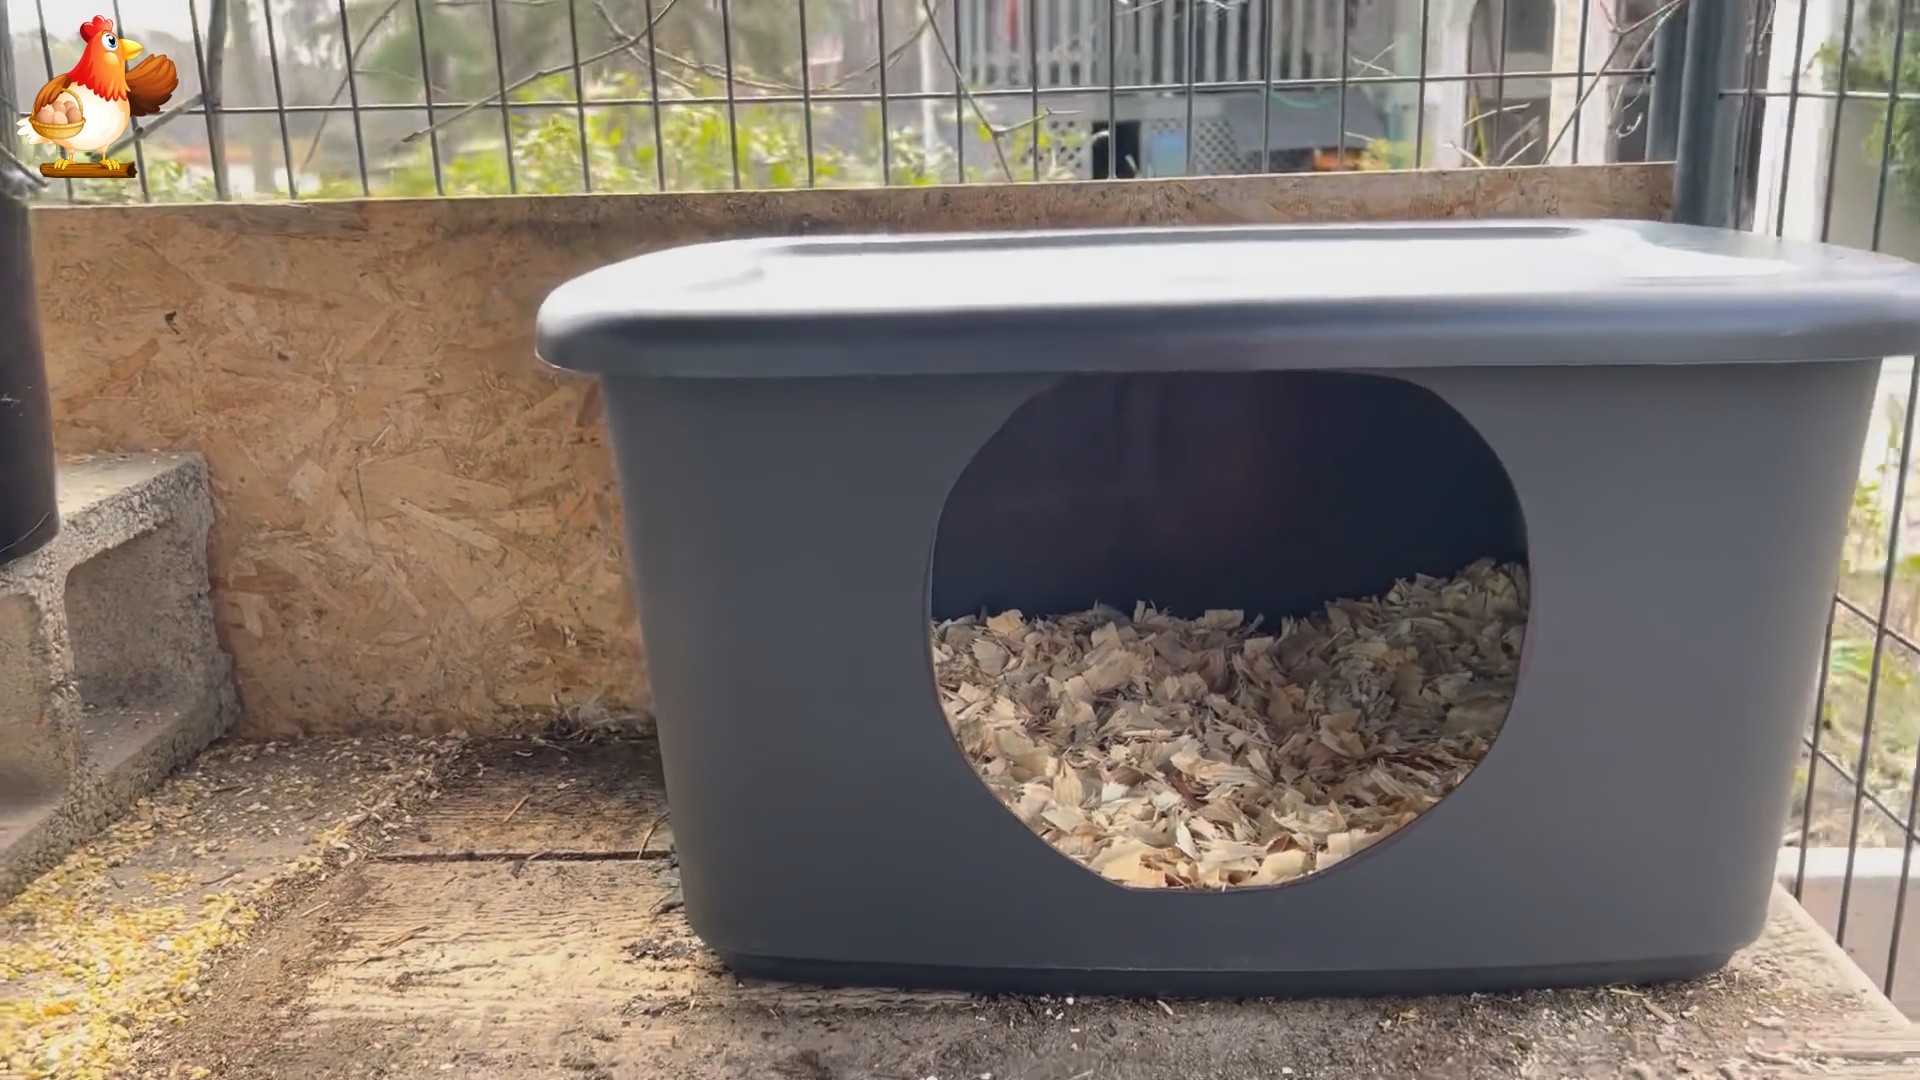 Гнездо курам в контейнере можно ставить на выгульном дворике